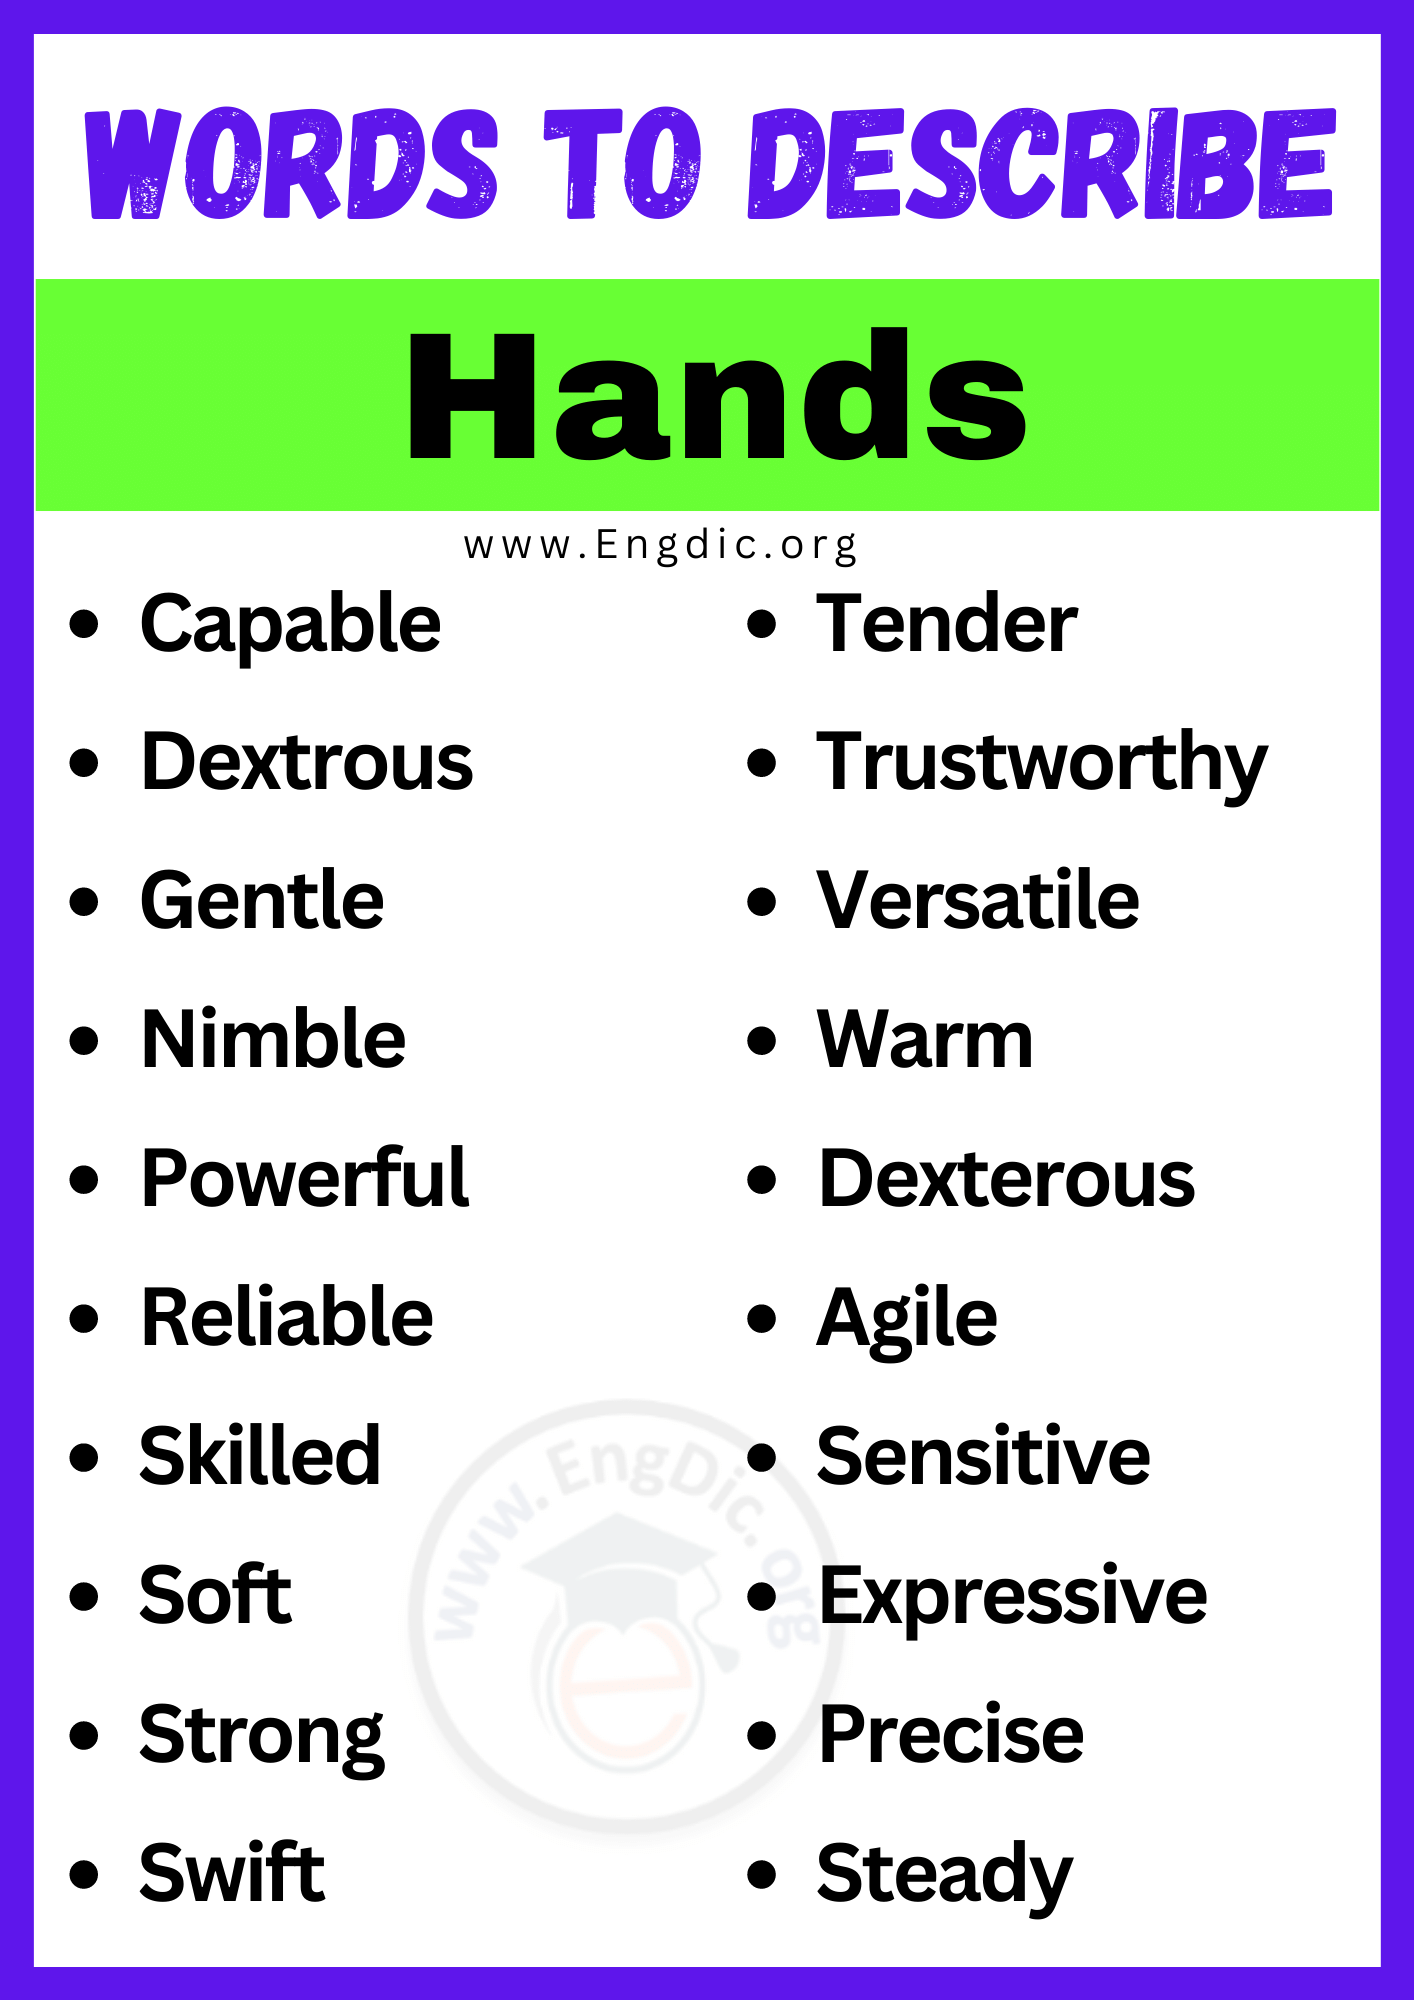 Words to Describe Hands